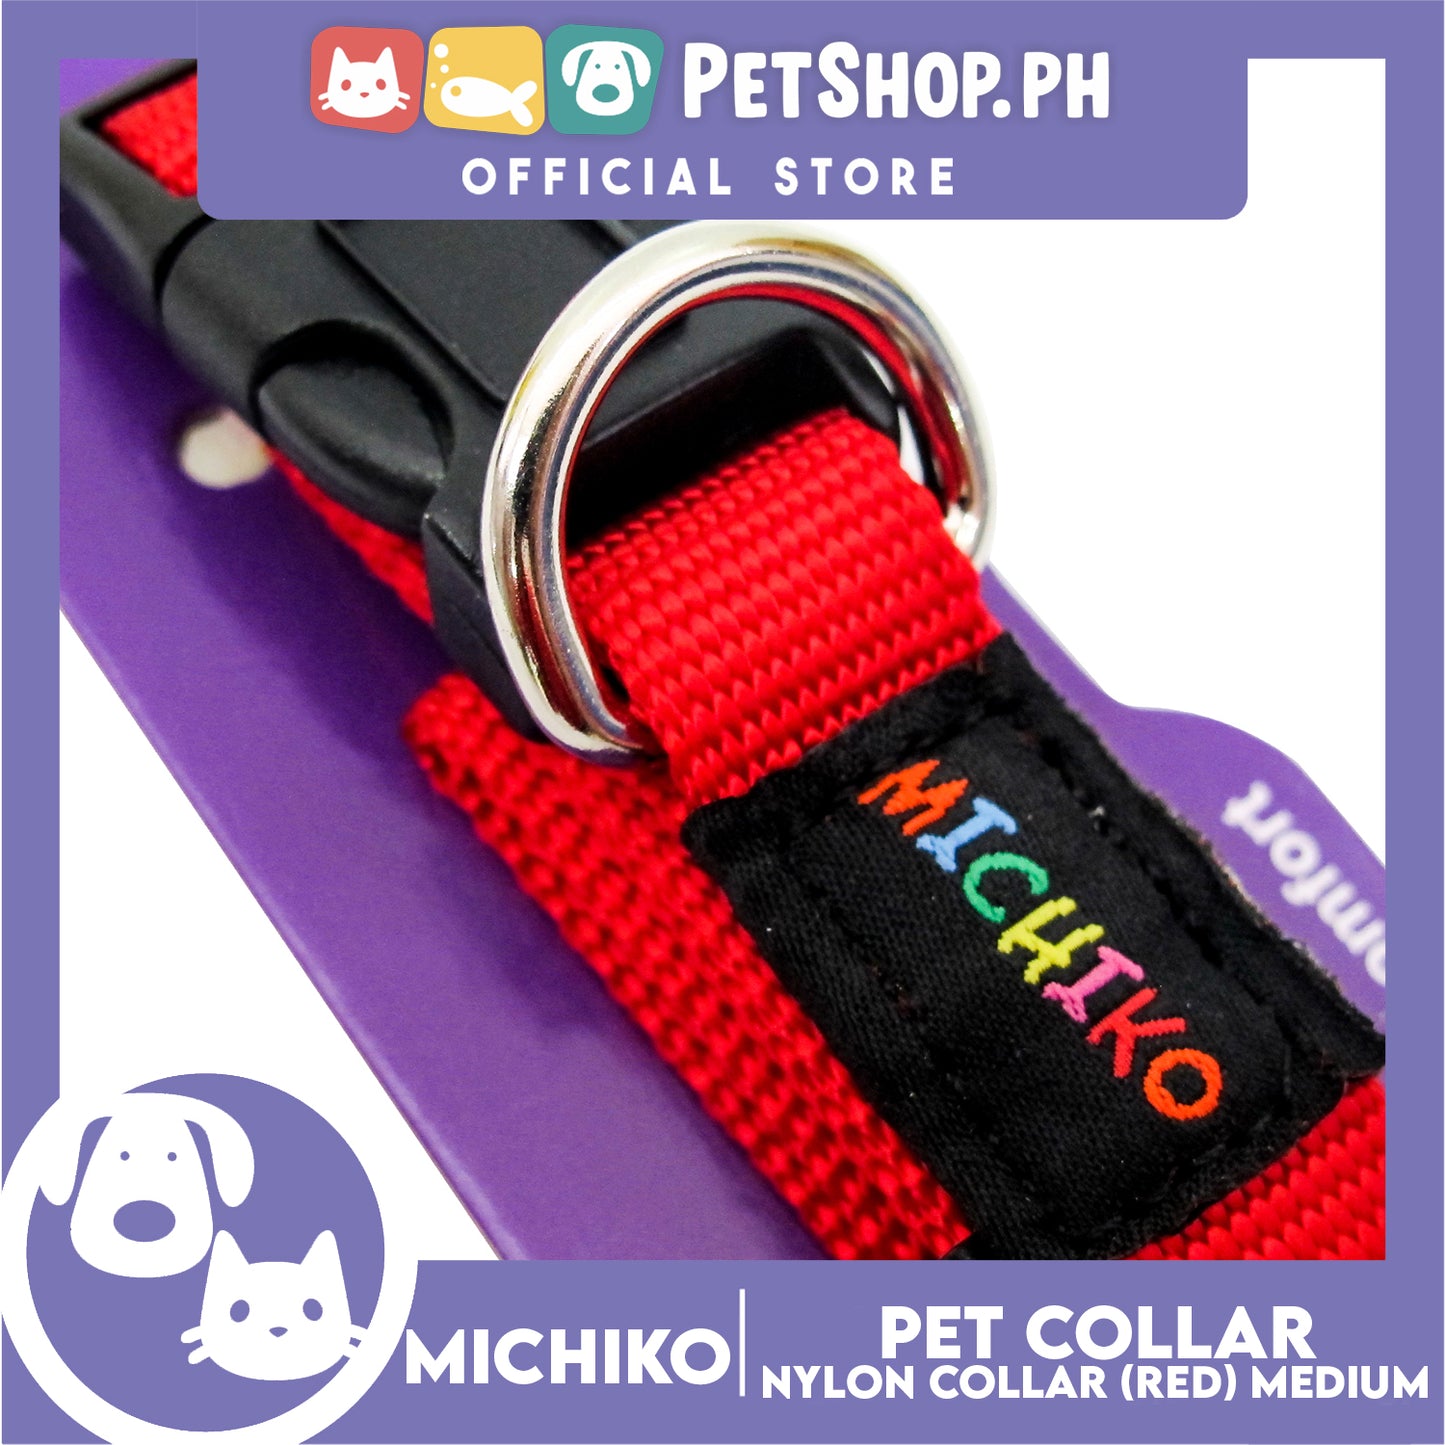 Michiko Nylon Collar Red (Medium) Pet Collar